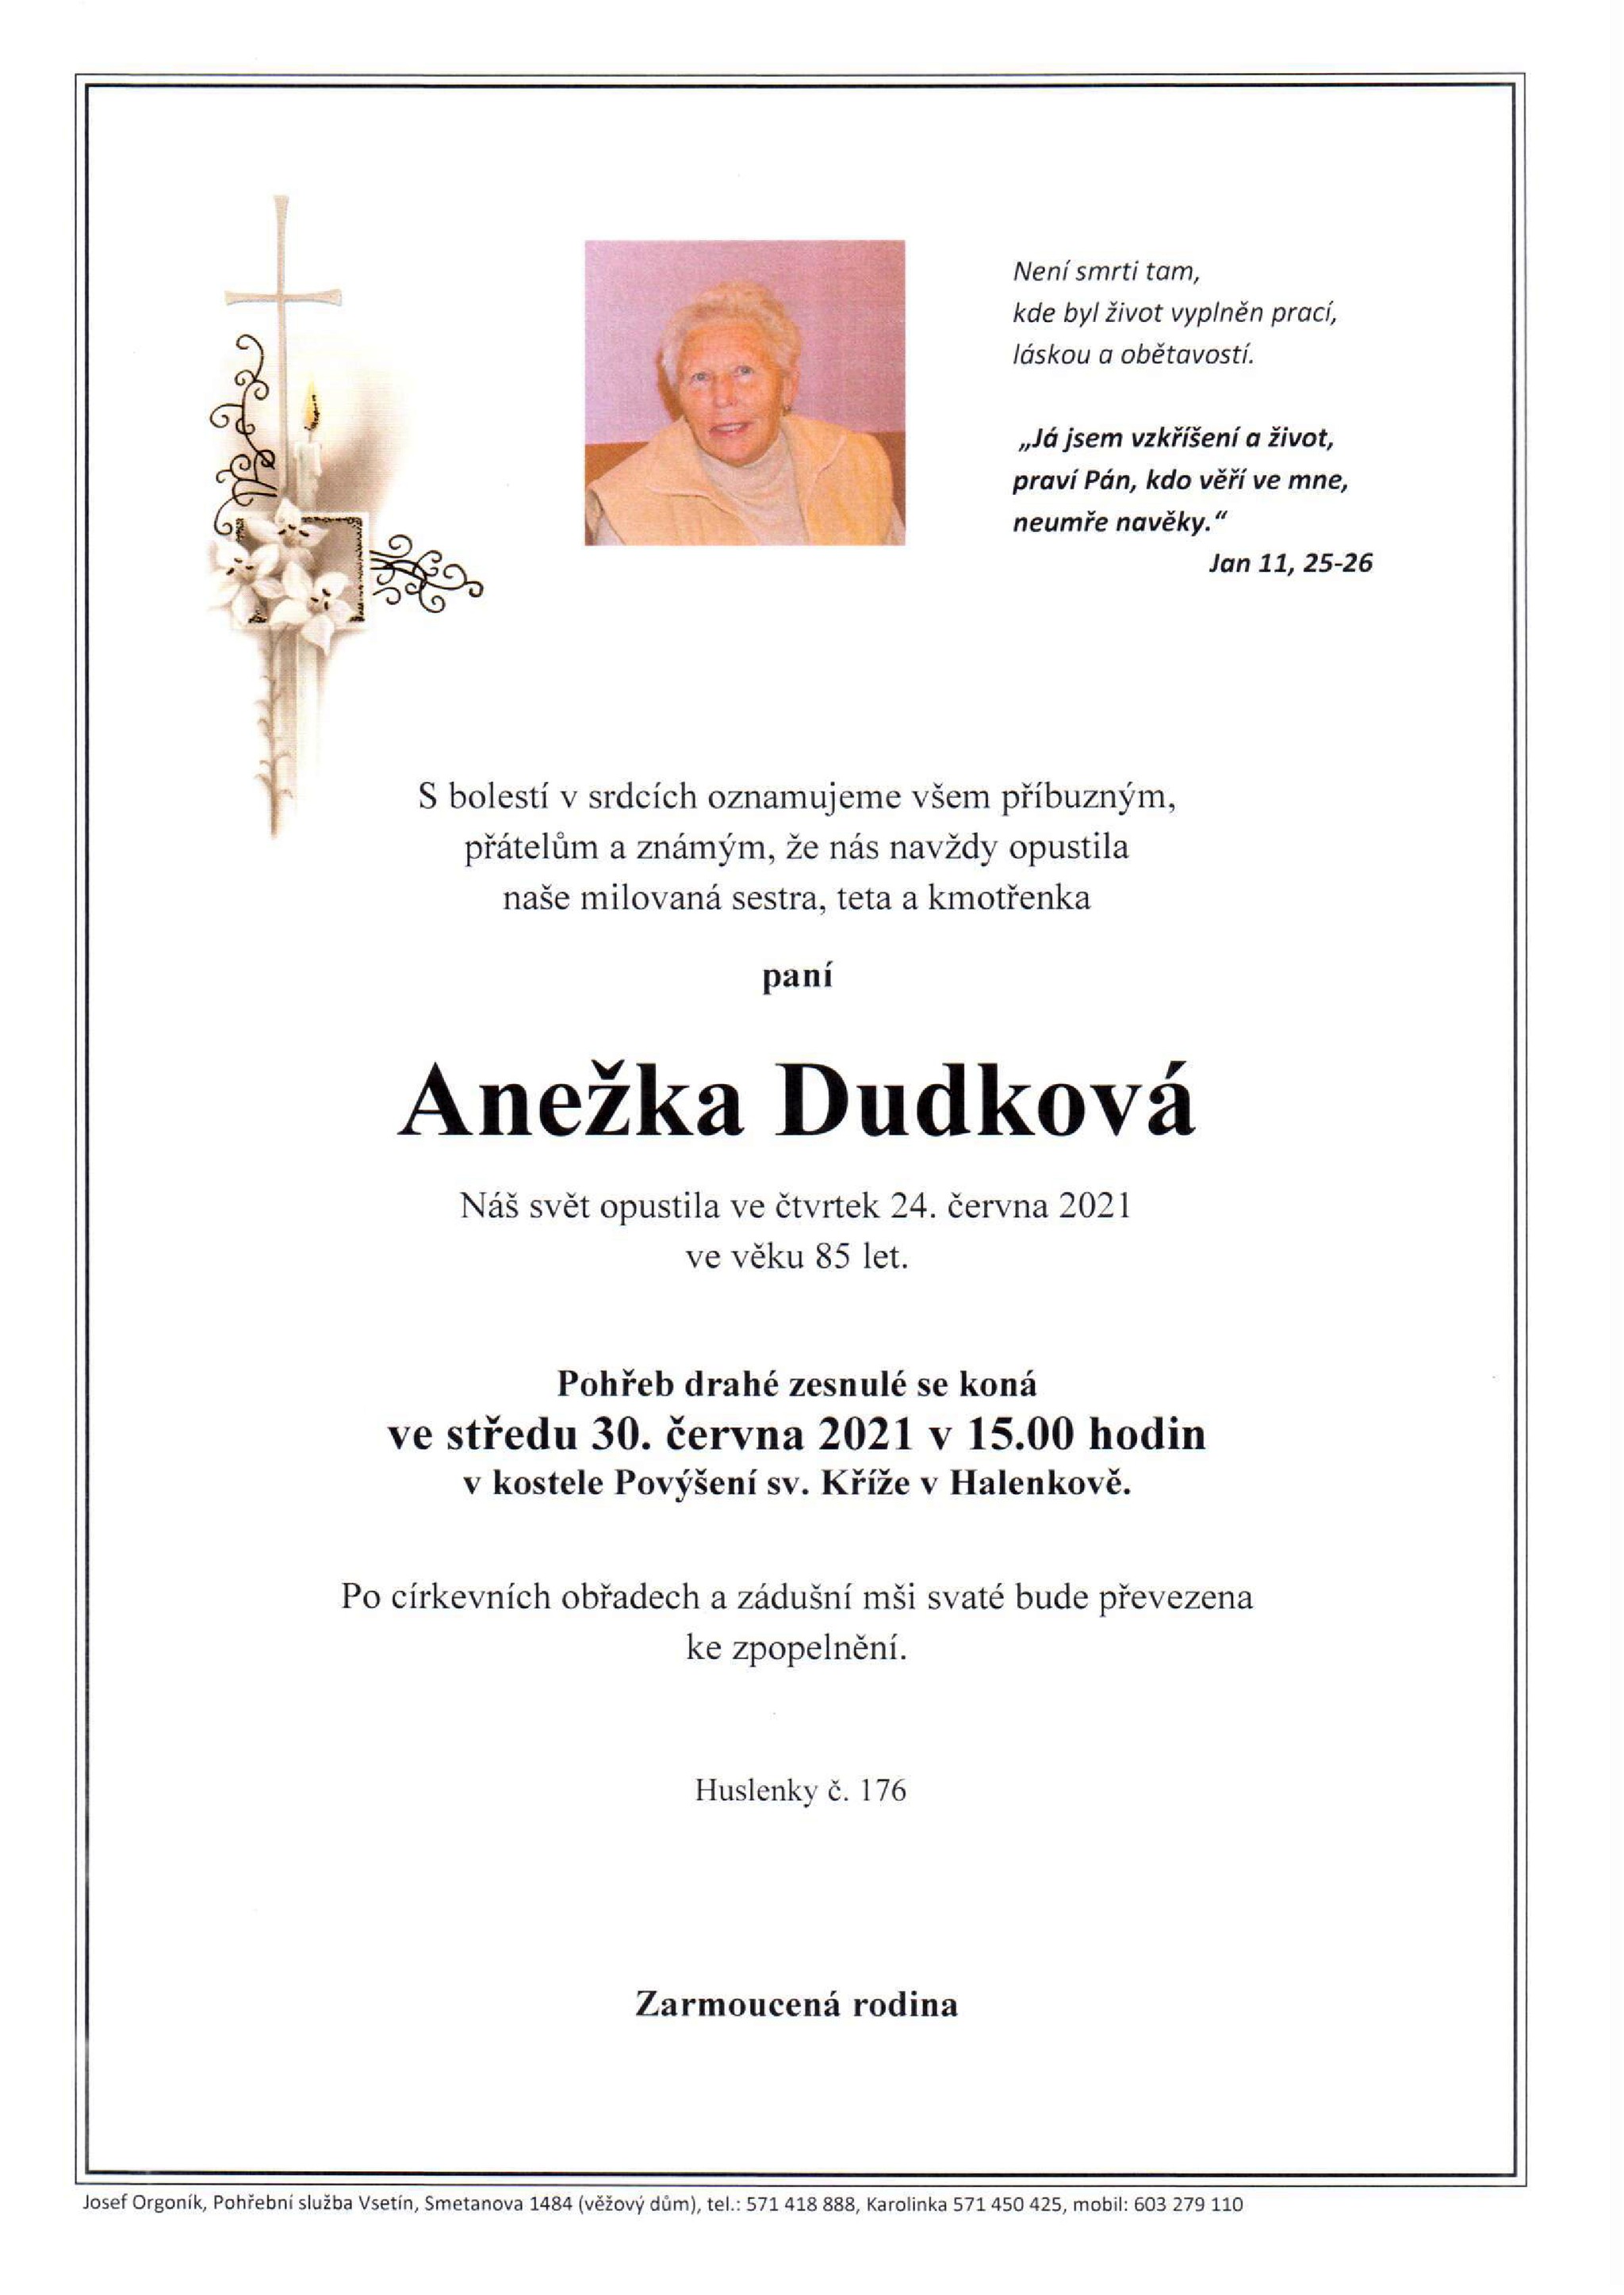 Anežka Dudková